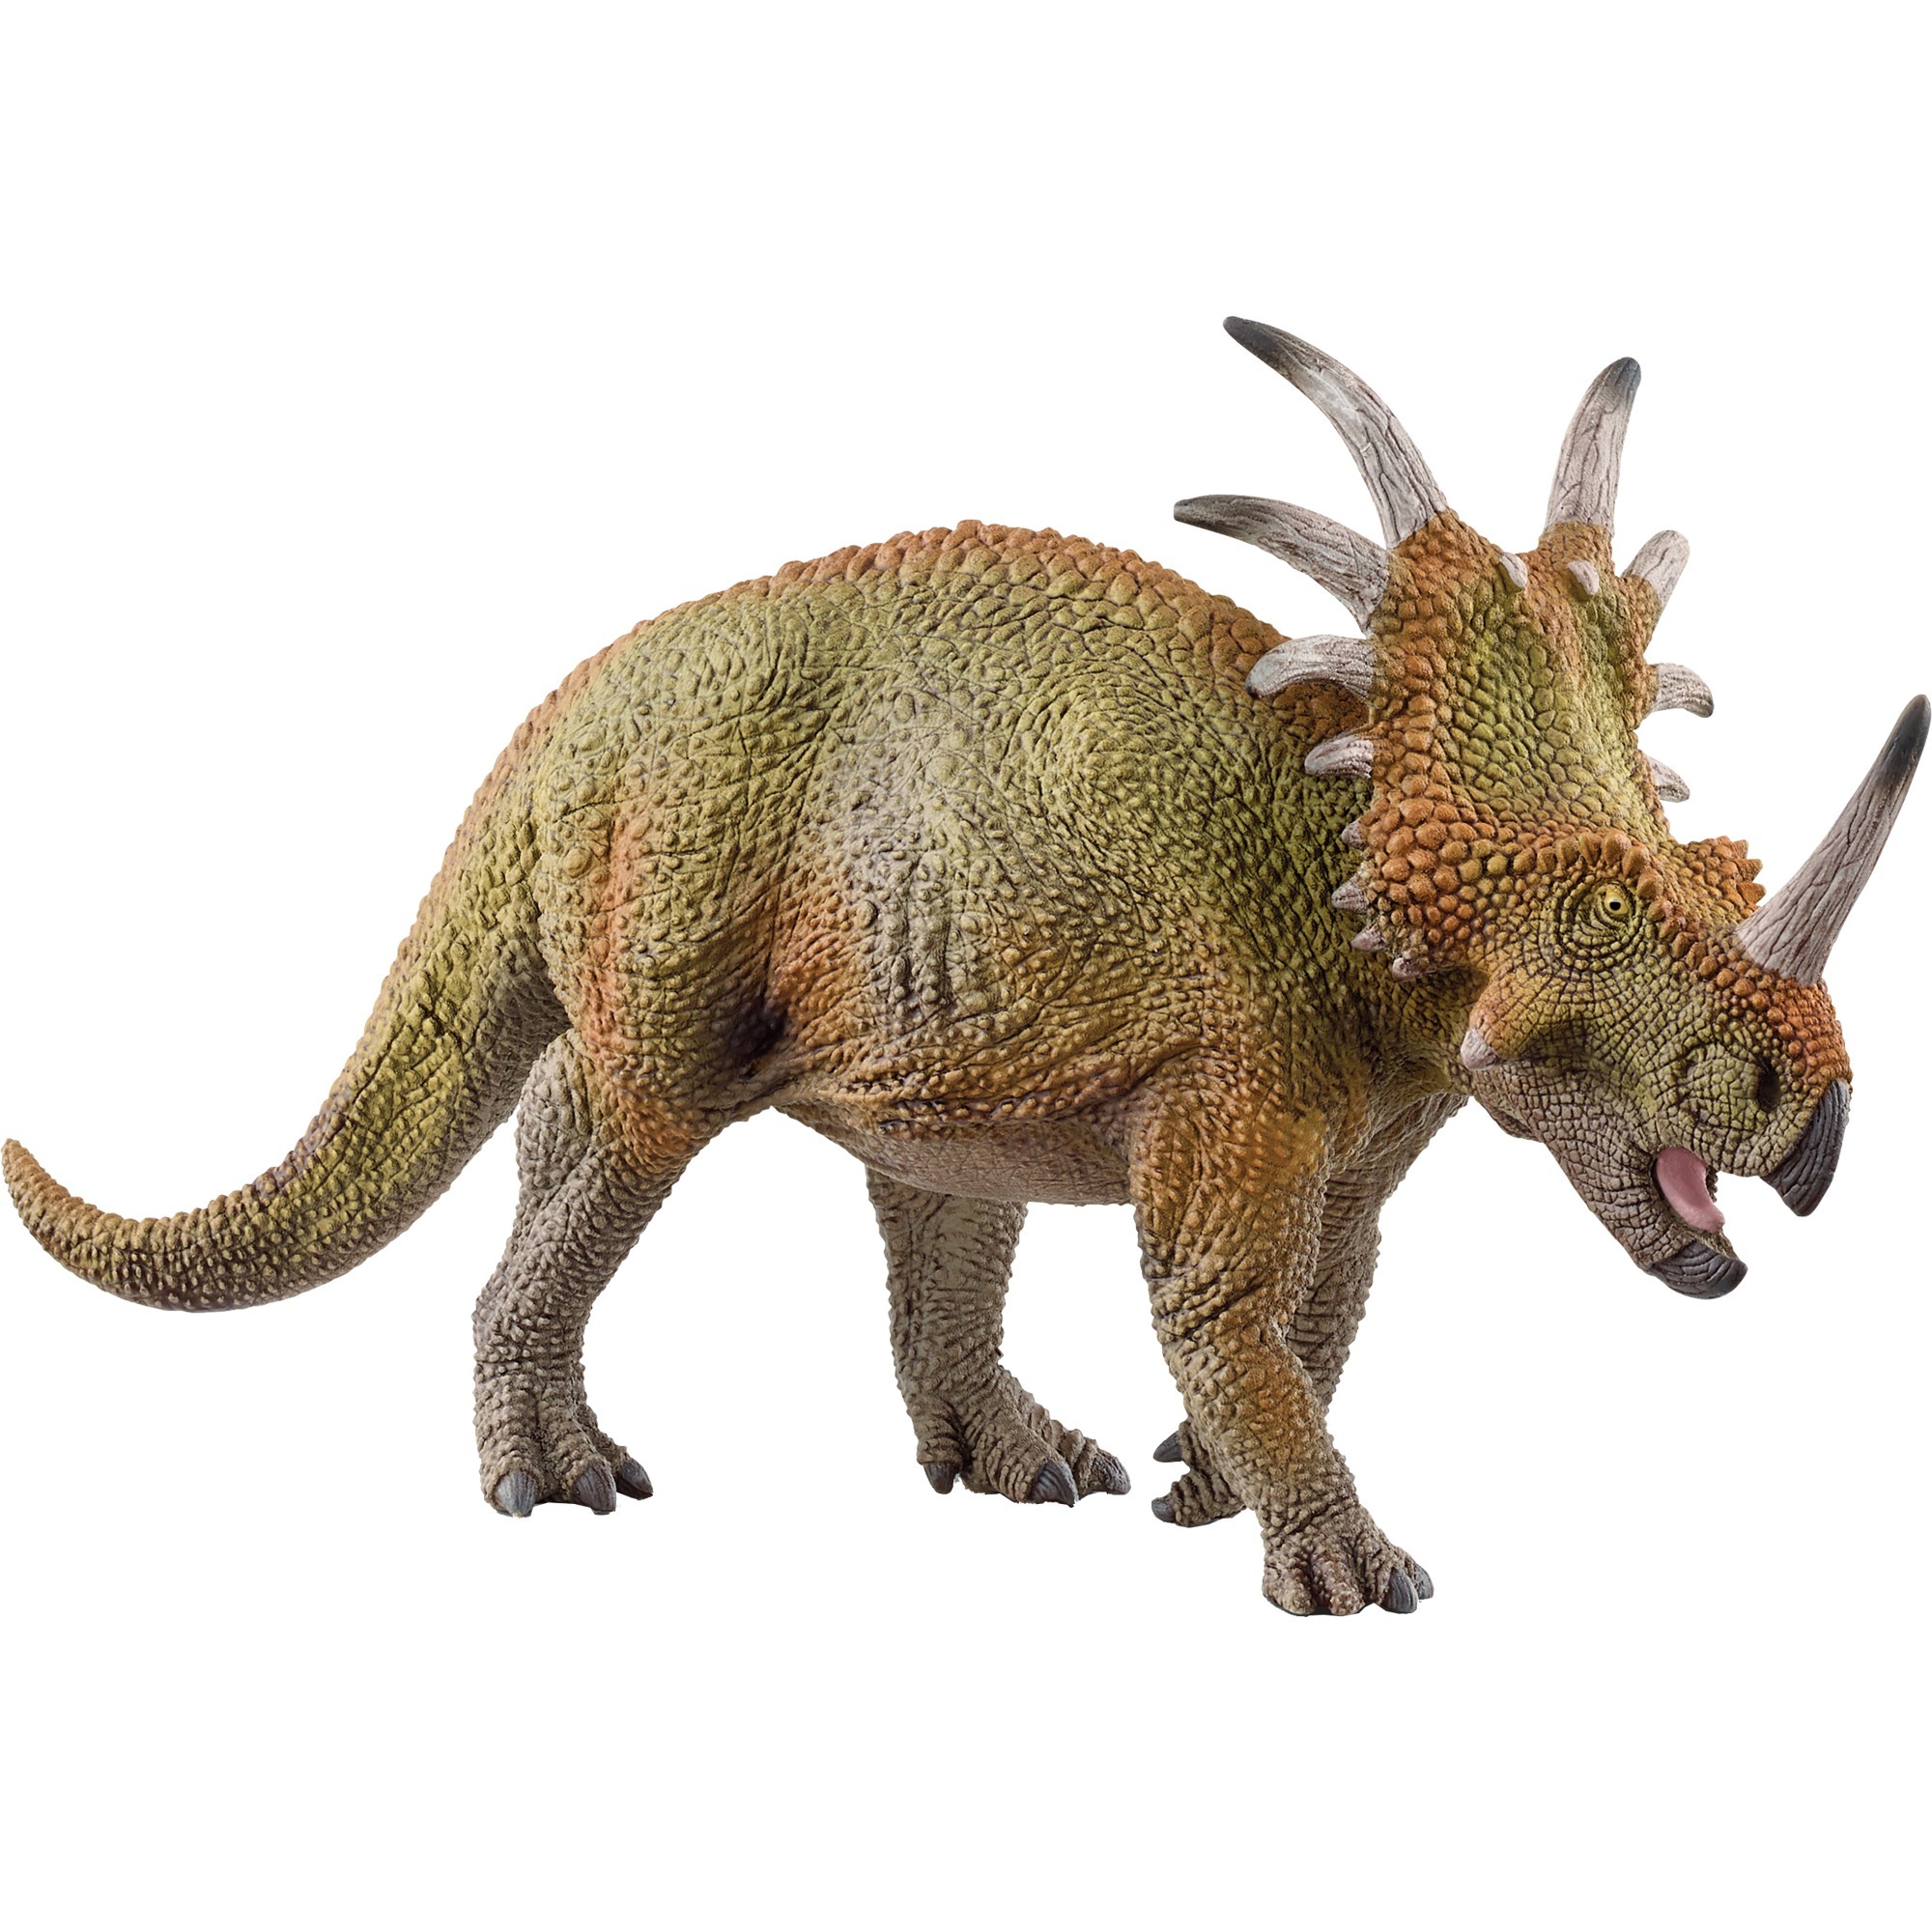 Image of Alternate - Dinosaurs Styracosaurus, Spielfigur online einkaufen bei Alternate